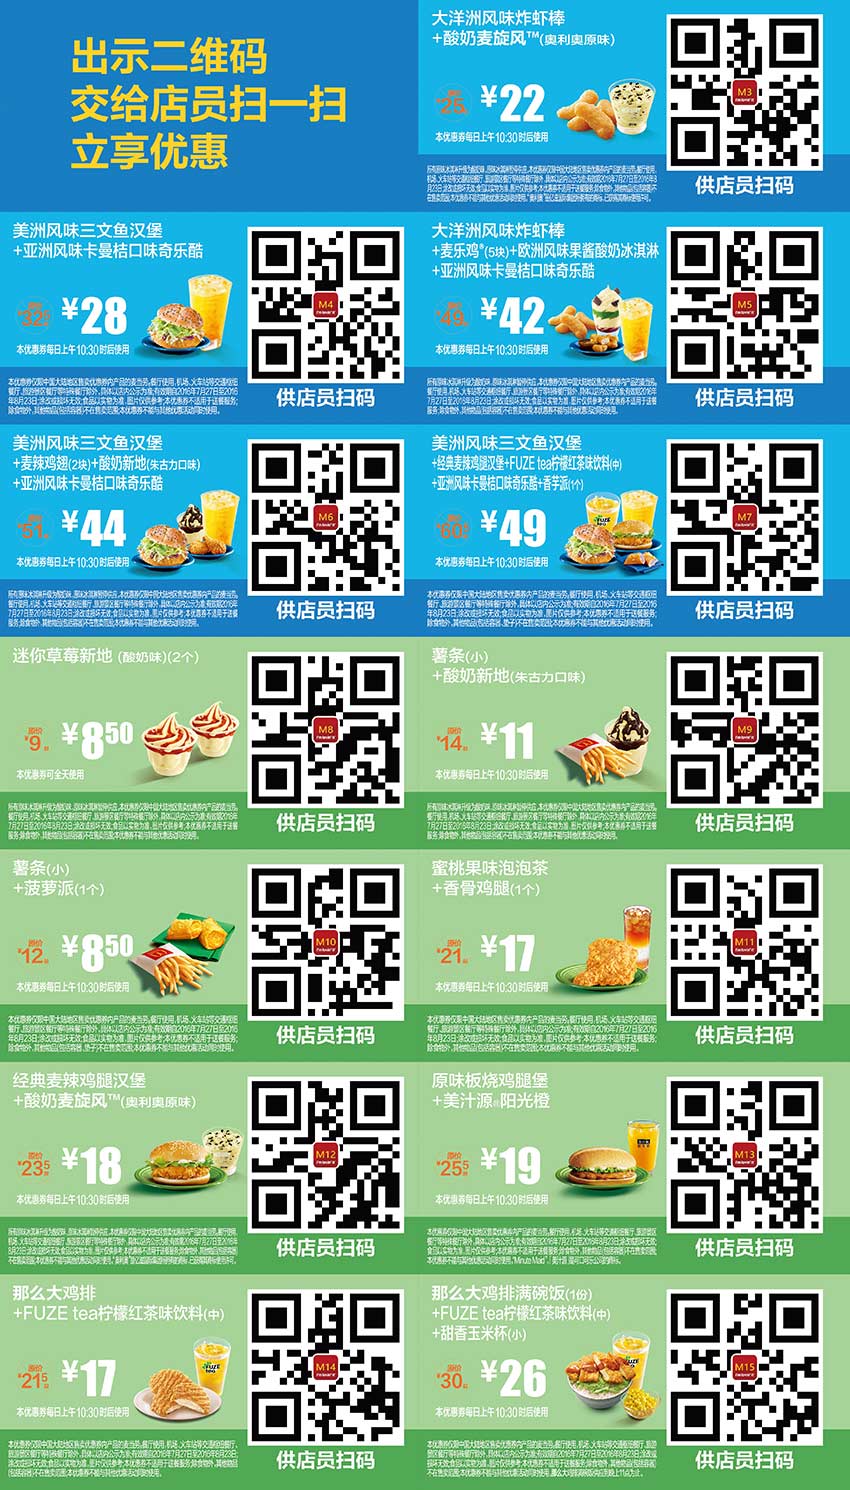 麦当劳优惠券2016年7月8月整张版本，麦当劳7月8月手机优惠券出示享优惠